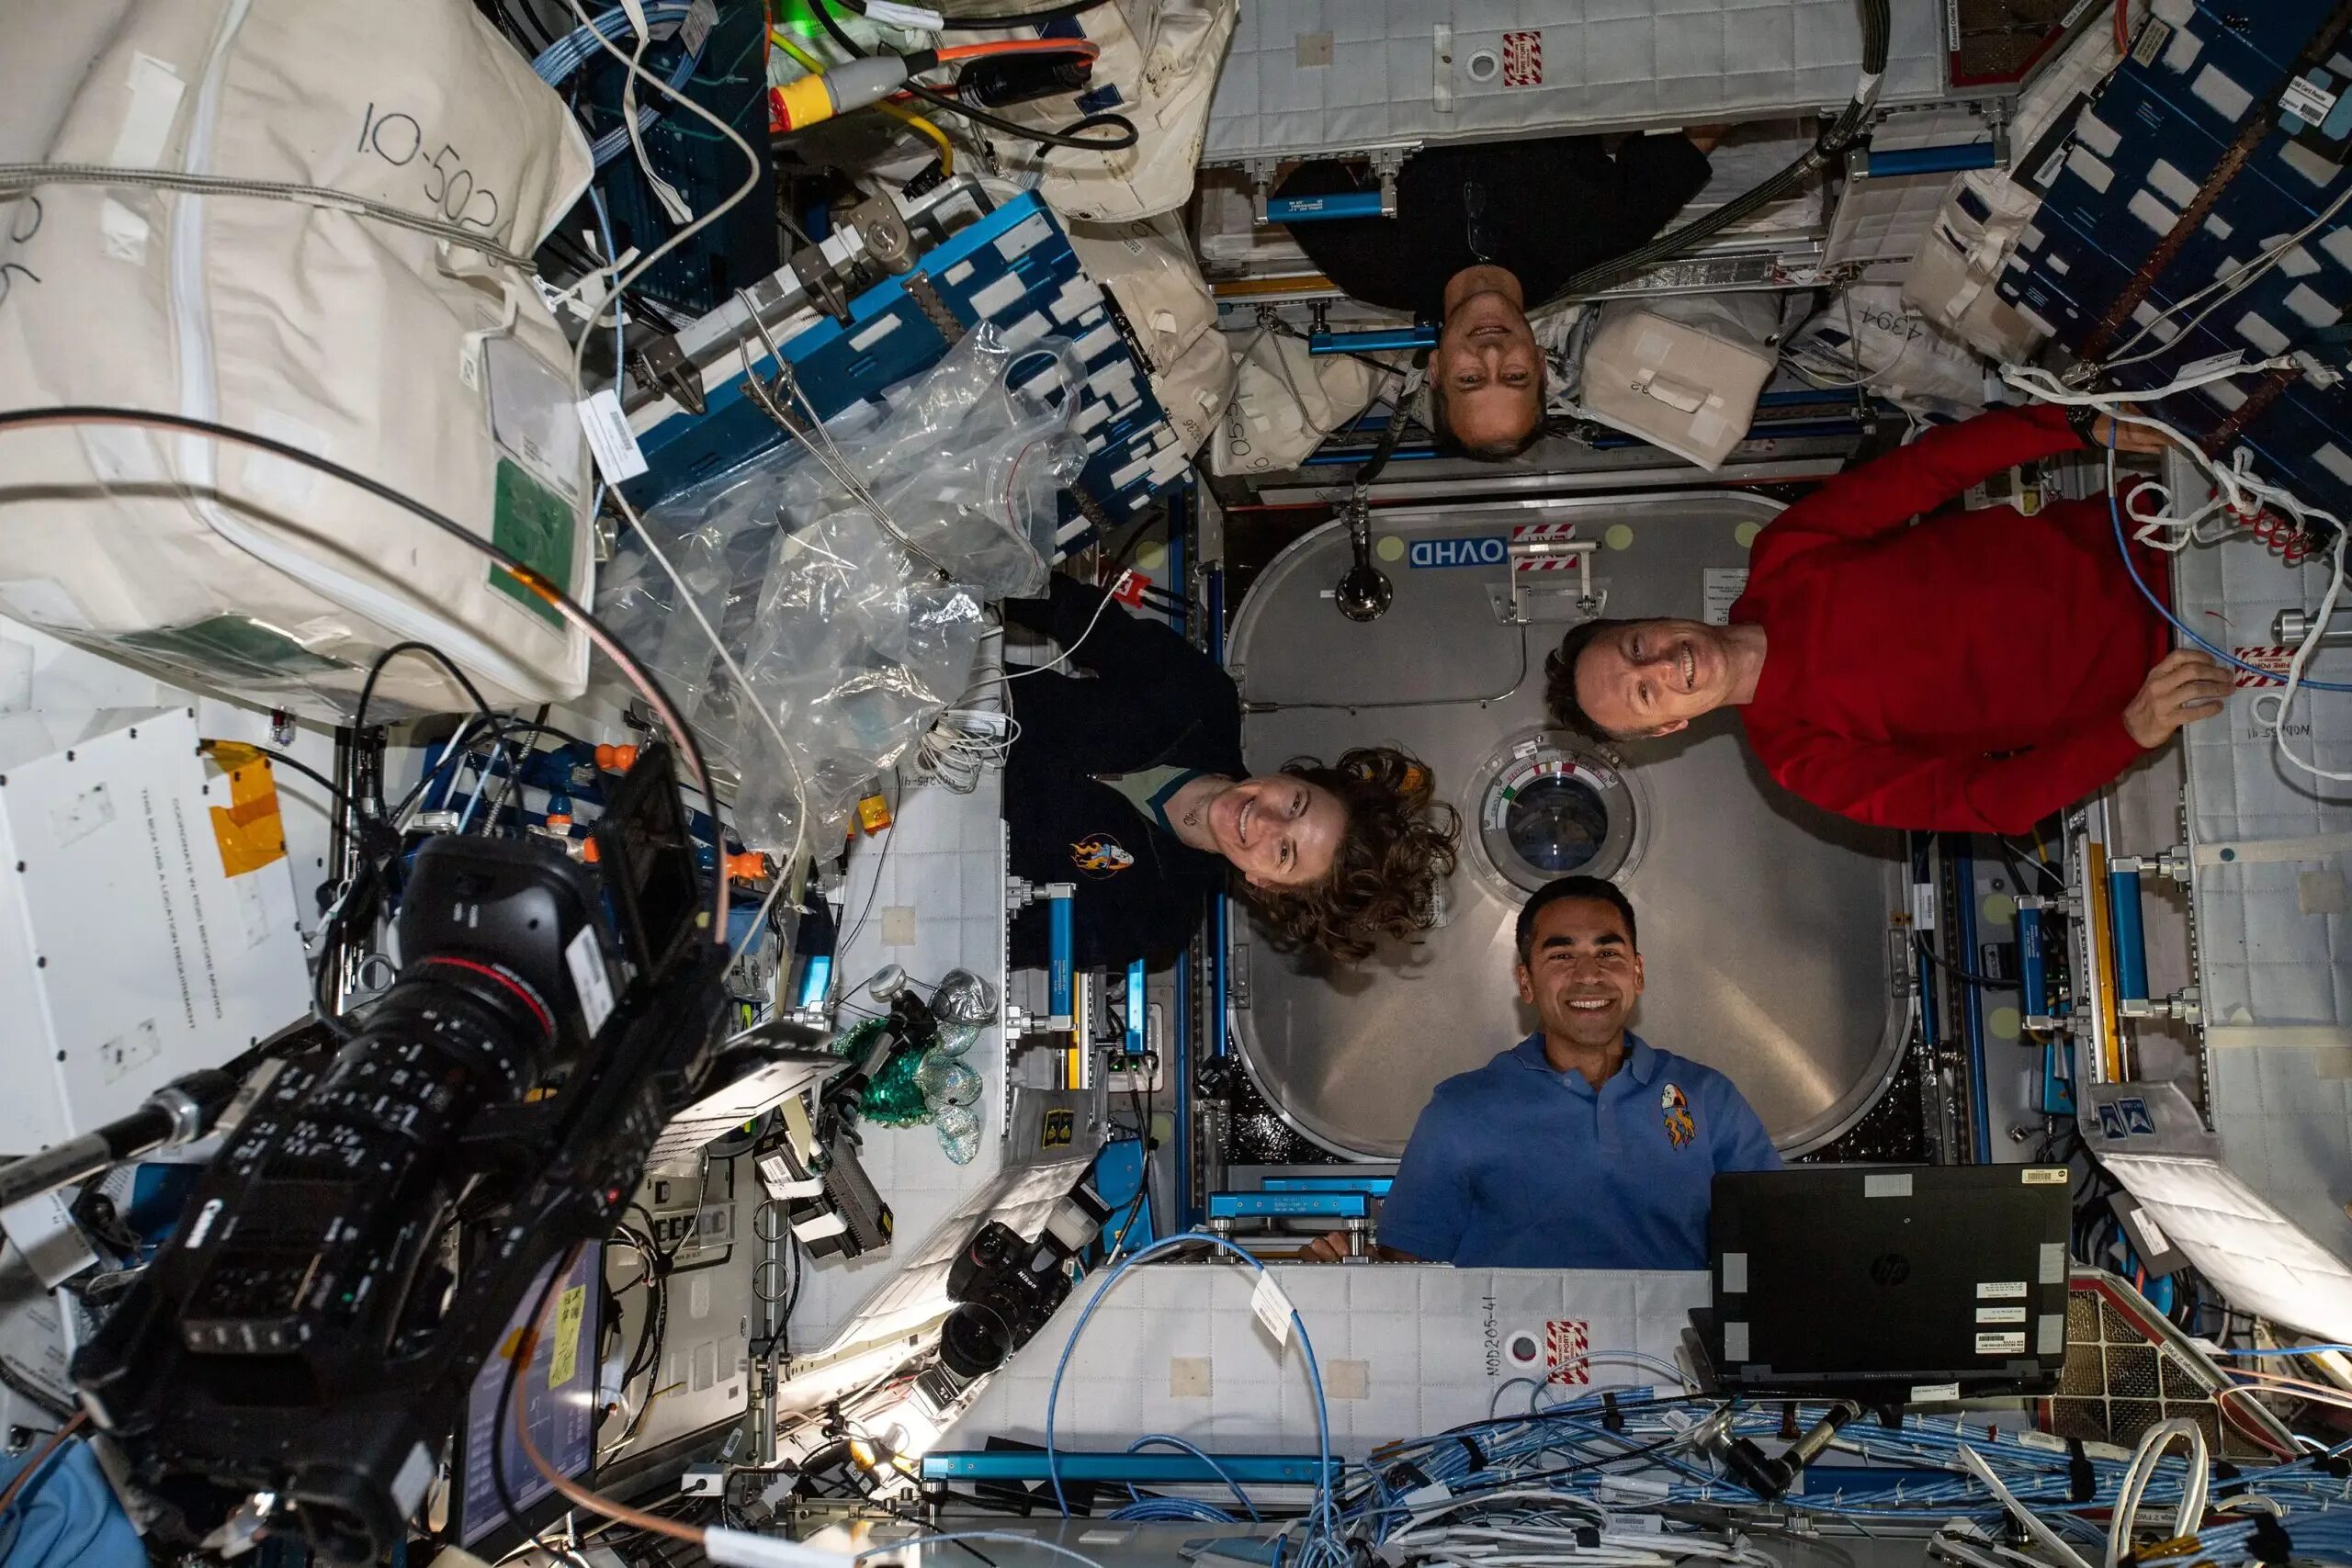 Какая космическая станция сейчас работает в космосе. Кейла Бэррон на МКС. Спейс егенси МКС. Опыты с растениями на МКС (Международная Космическая станция). МКС-70 НАСА.